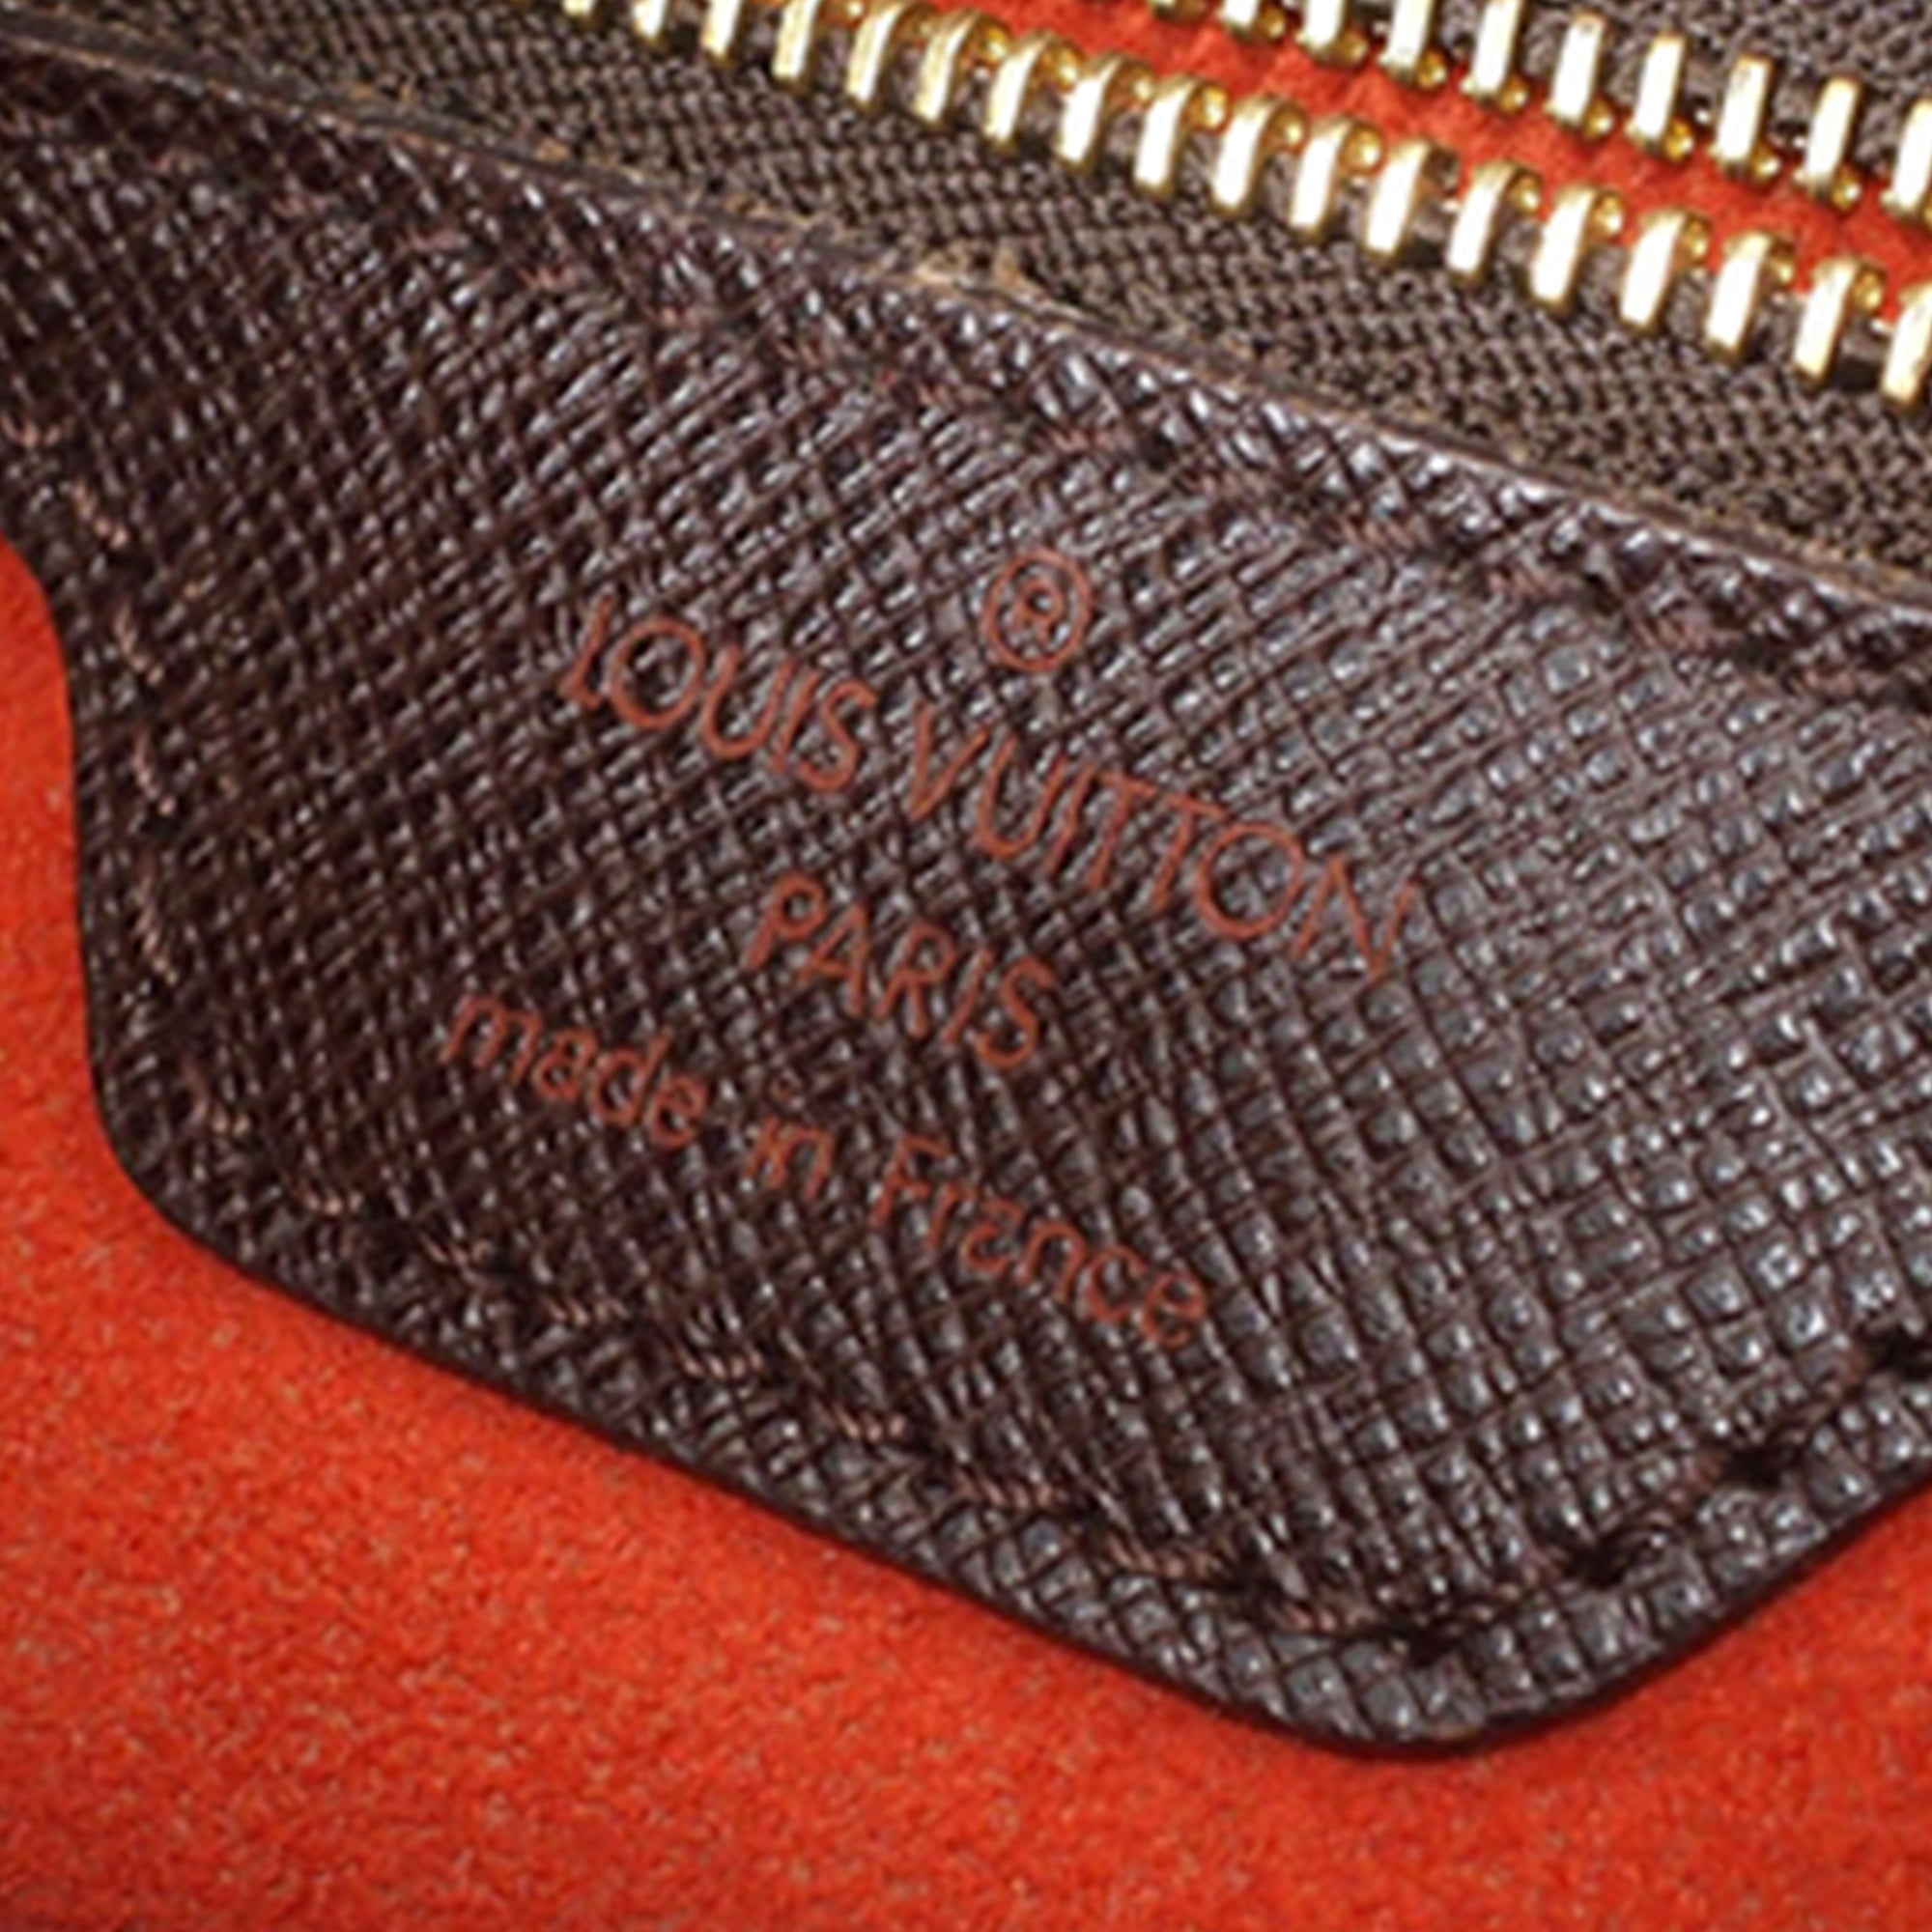 Vintage Louis Vuitton Damier Ebene Marais PM Bucket Bag SP1000 021023